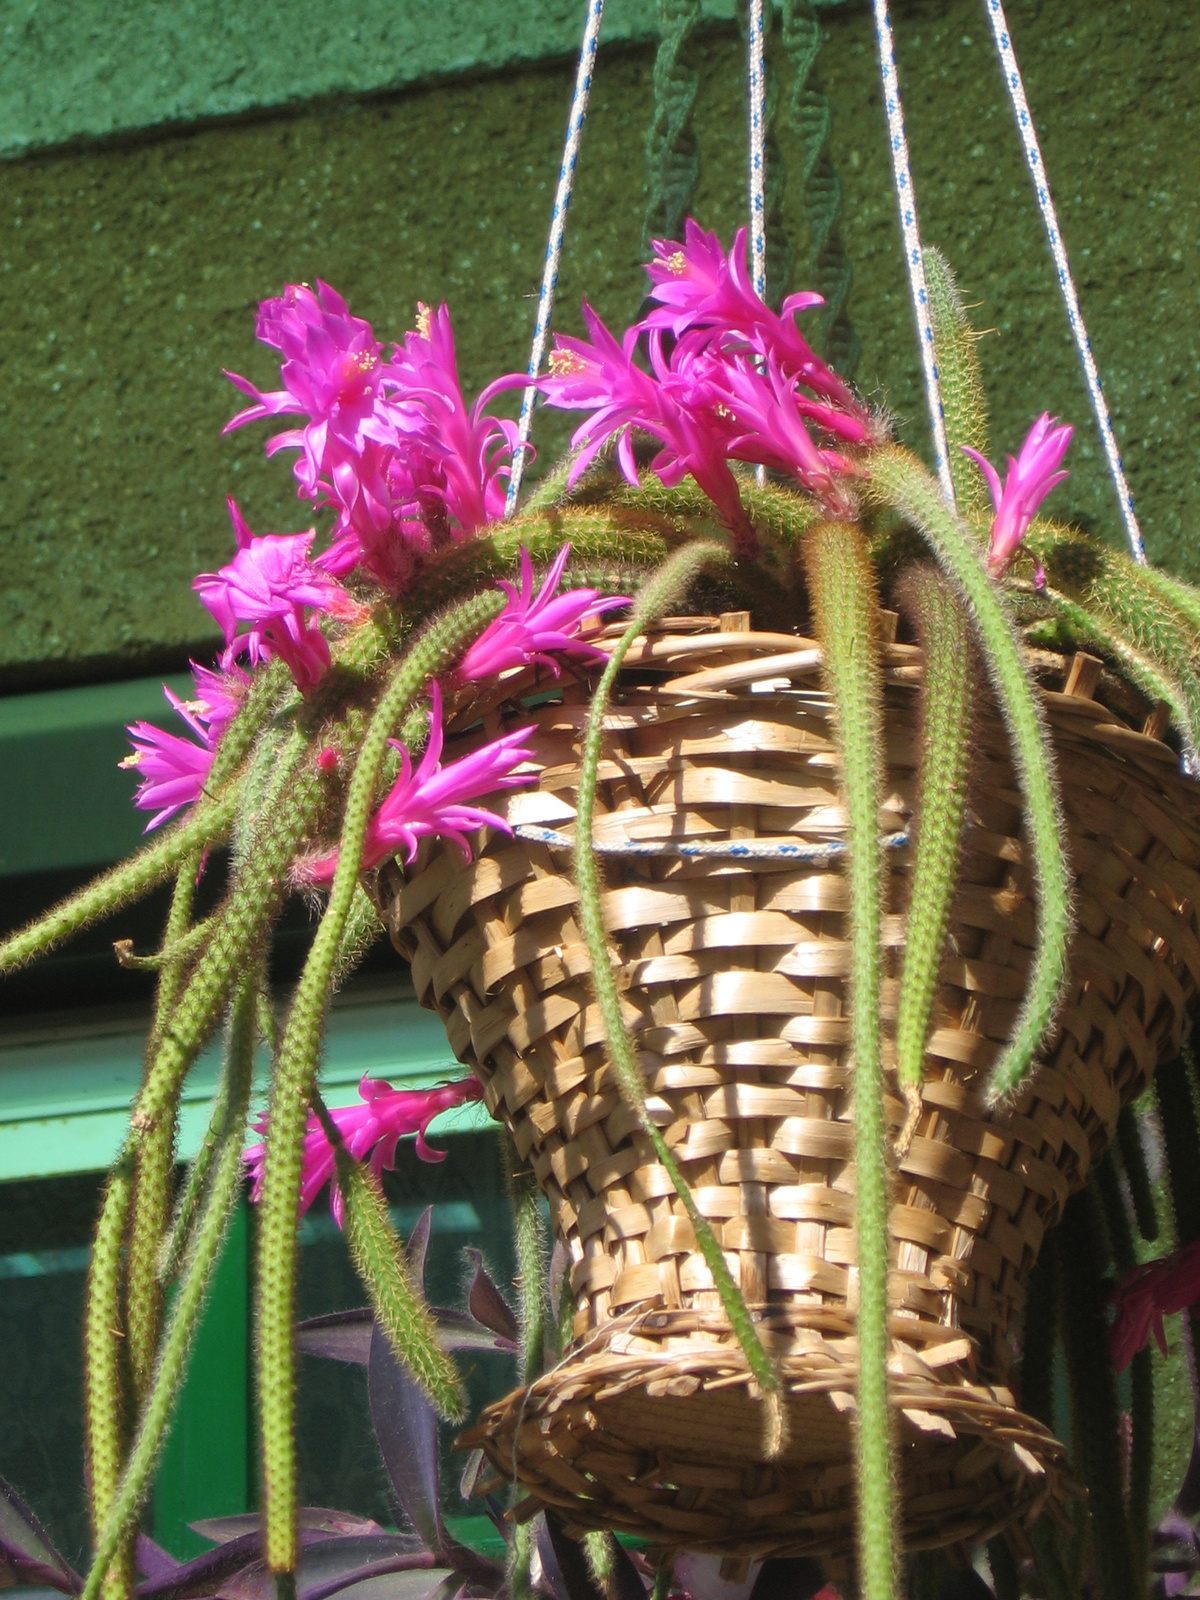 Korbács-kaktusz I